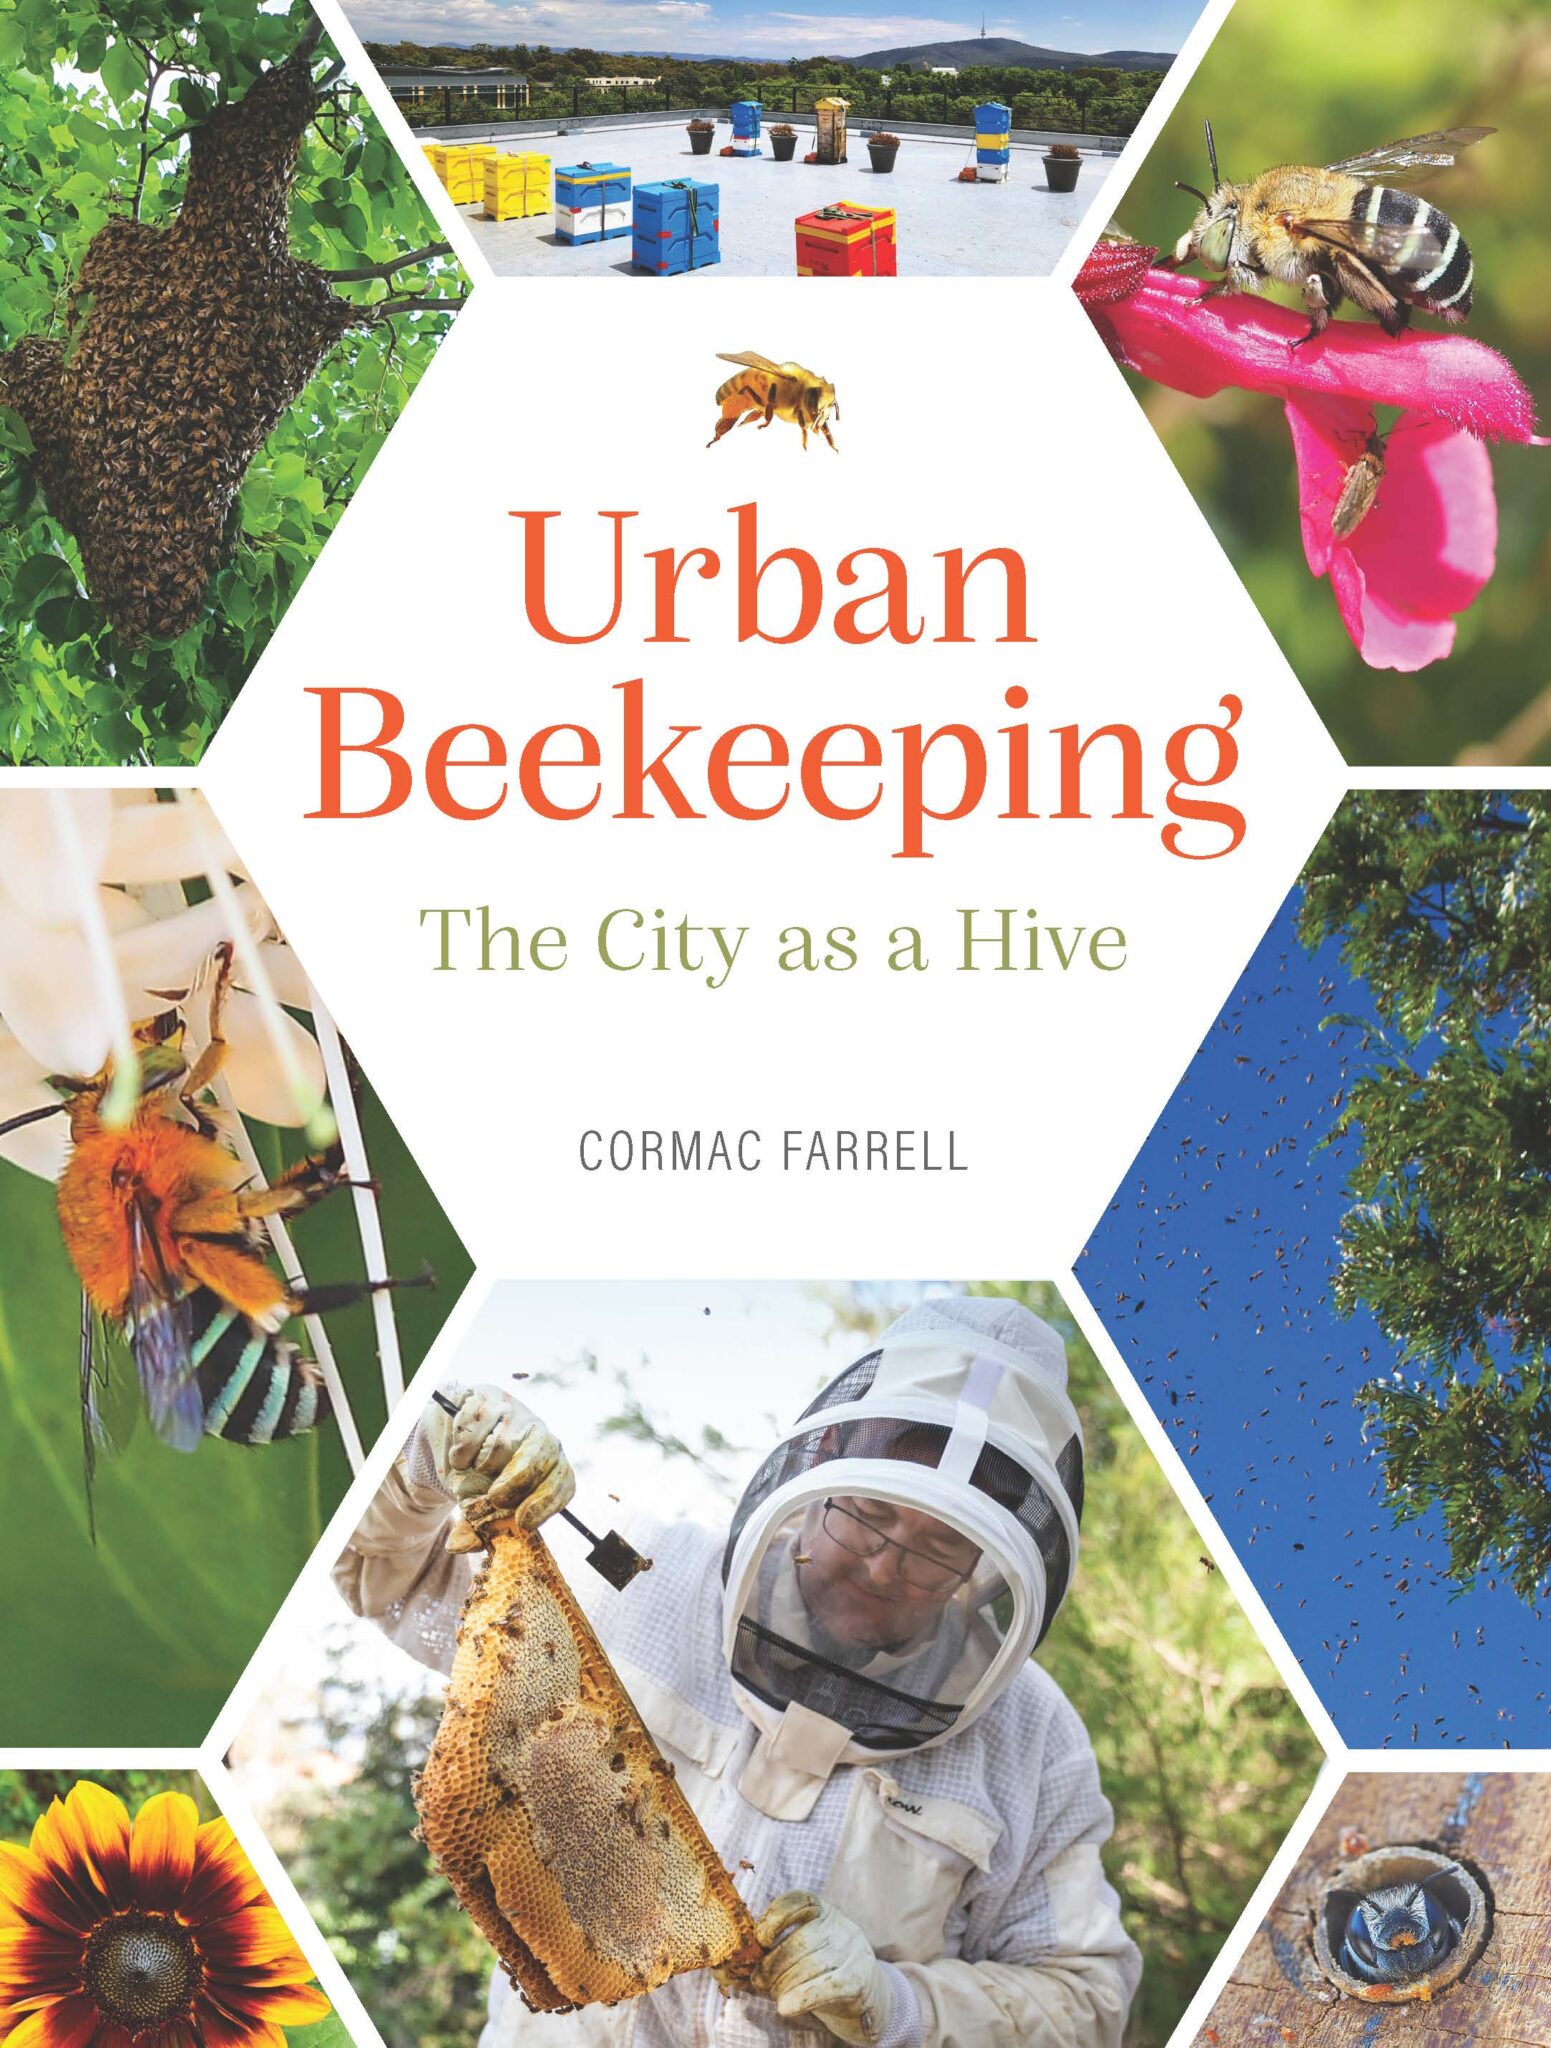 The Urban Beekeeping